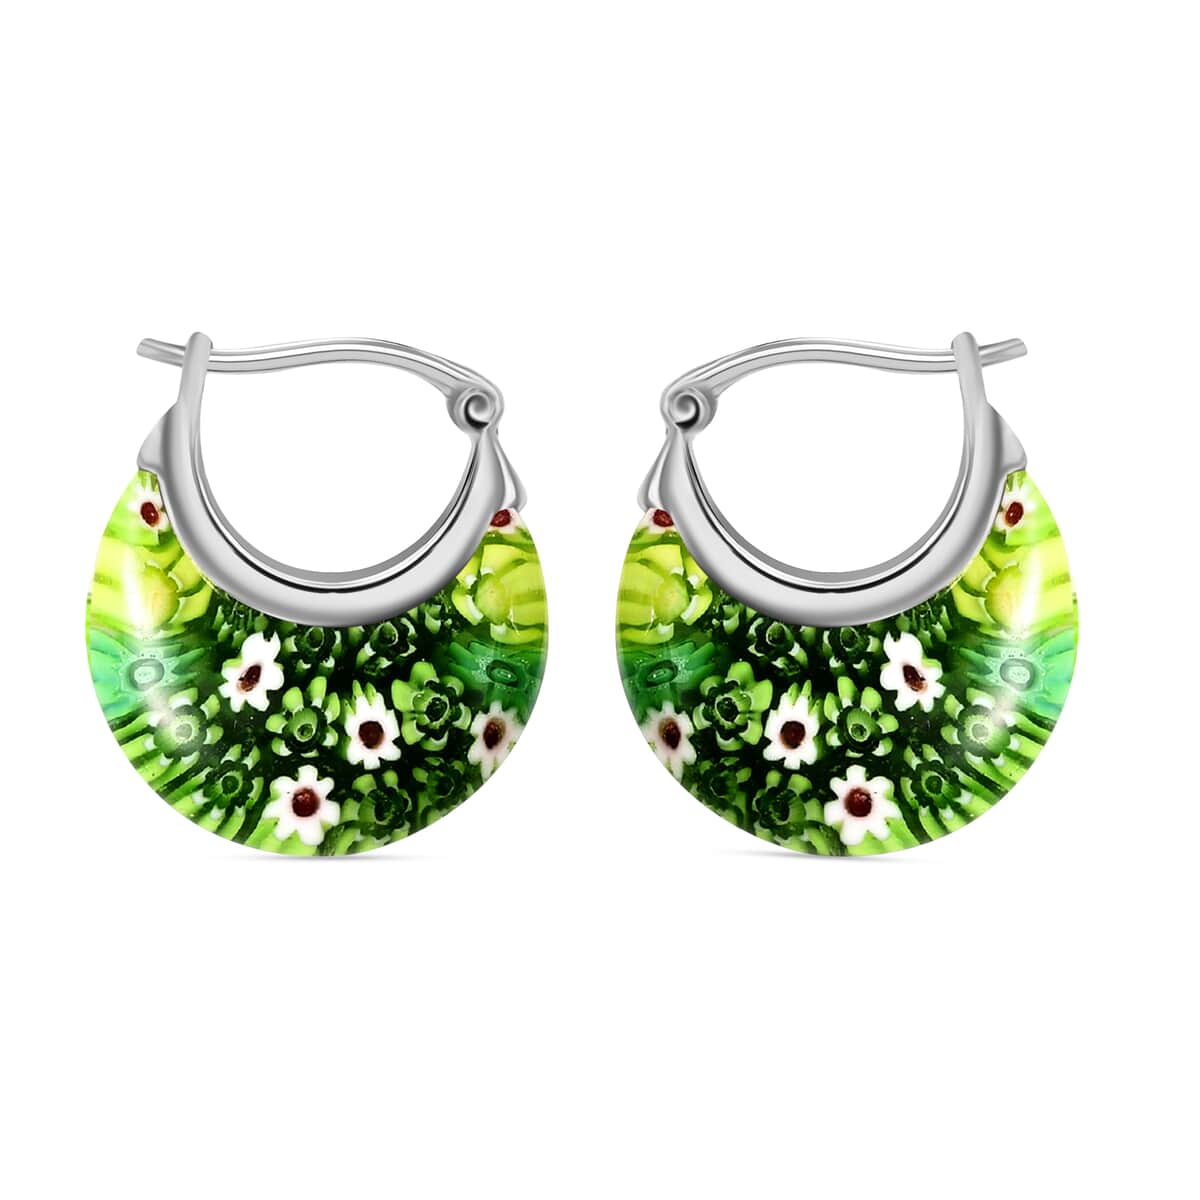 Green Murano Style Hoop Basket Earrings in Stainless Steel, Floral Millefiori Earrings, Sweatproof Hypoallergenic Earrings (Del. in 15-20 Days) image number 0